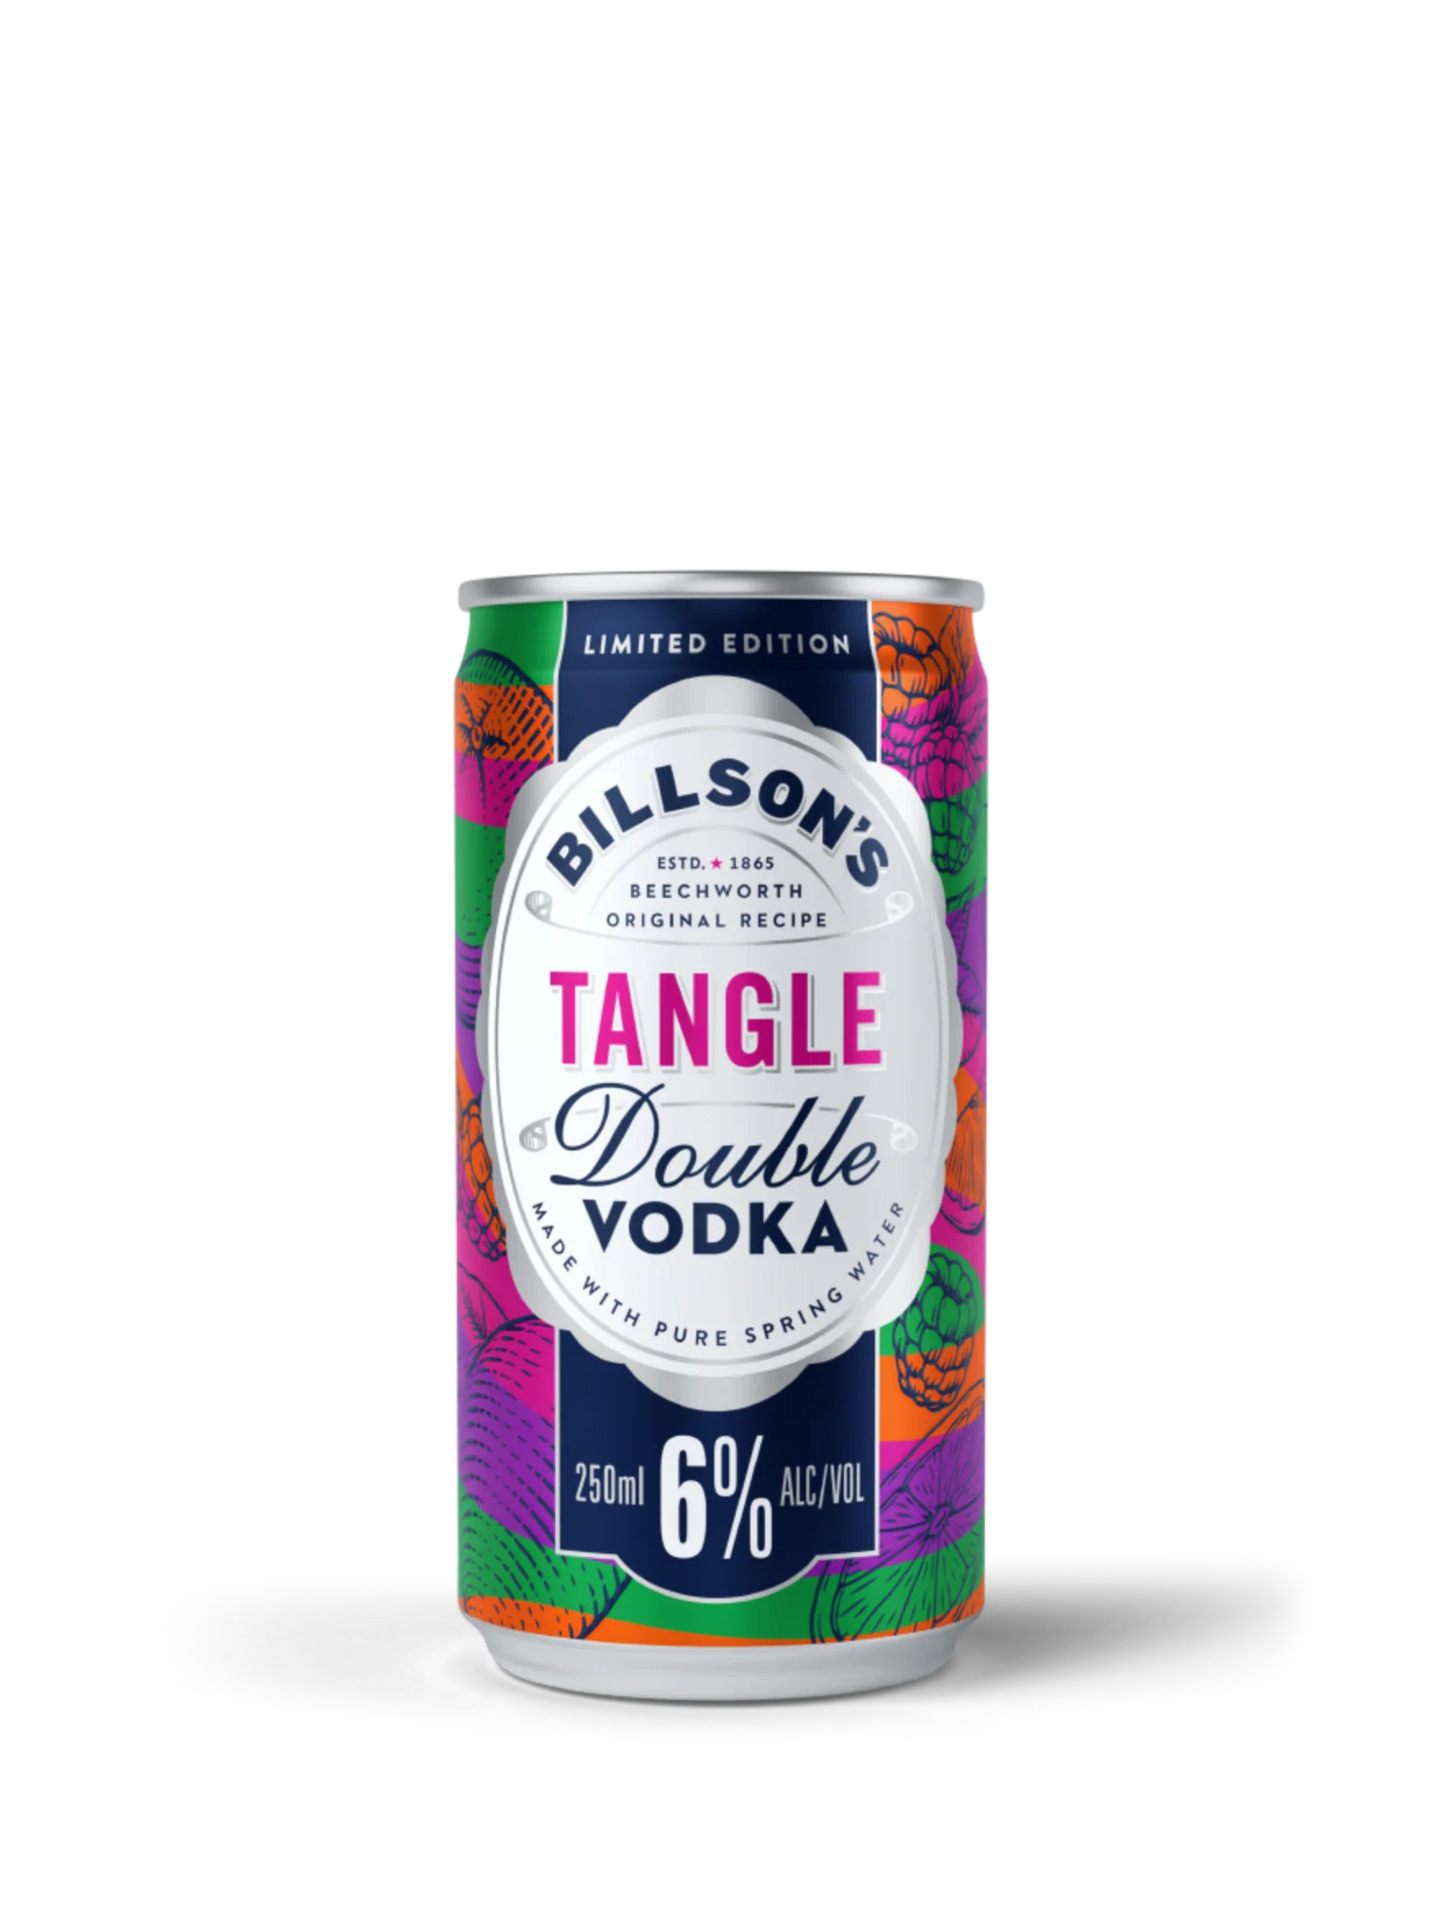 Billson's Vodka Tangle 6% 250ml